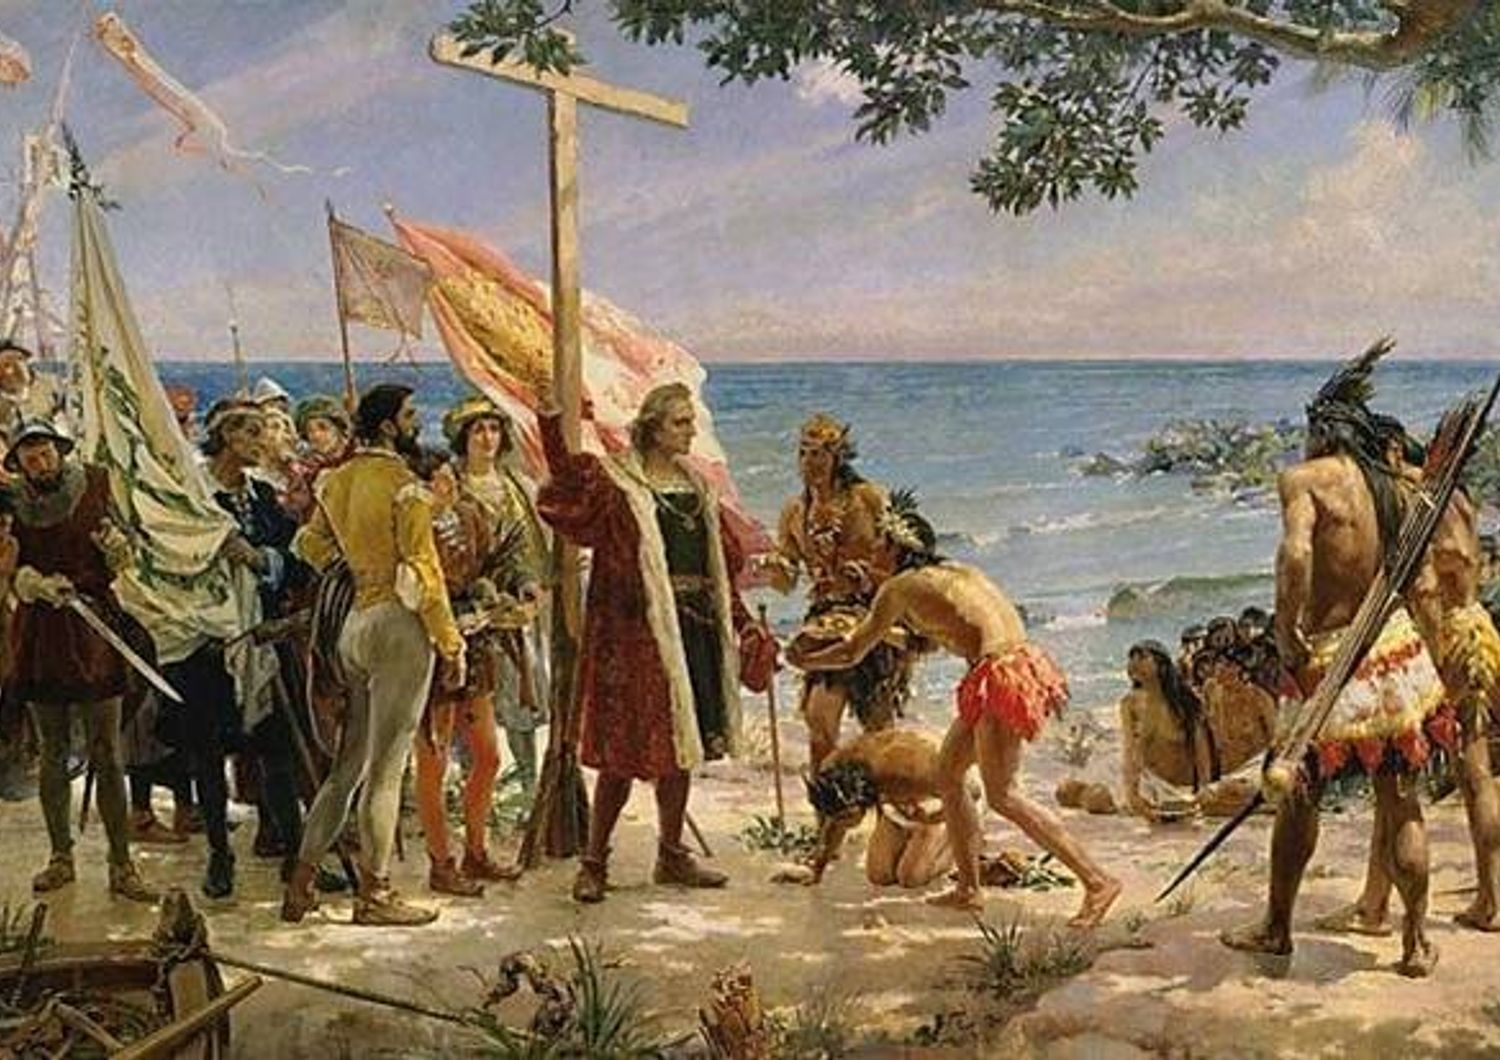 Colombo fu un corsaro portoghese? L&#39;esame del Dna sveler&agrave; il mistero